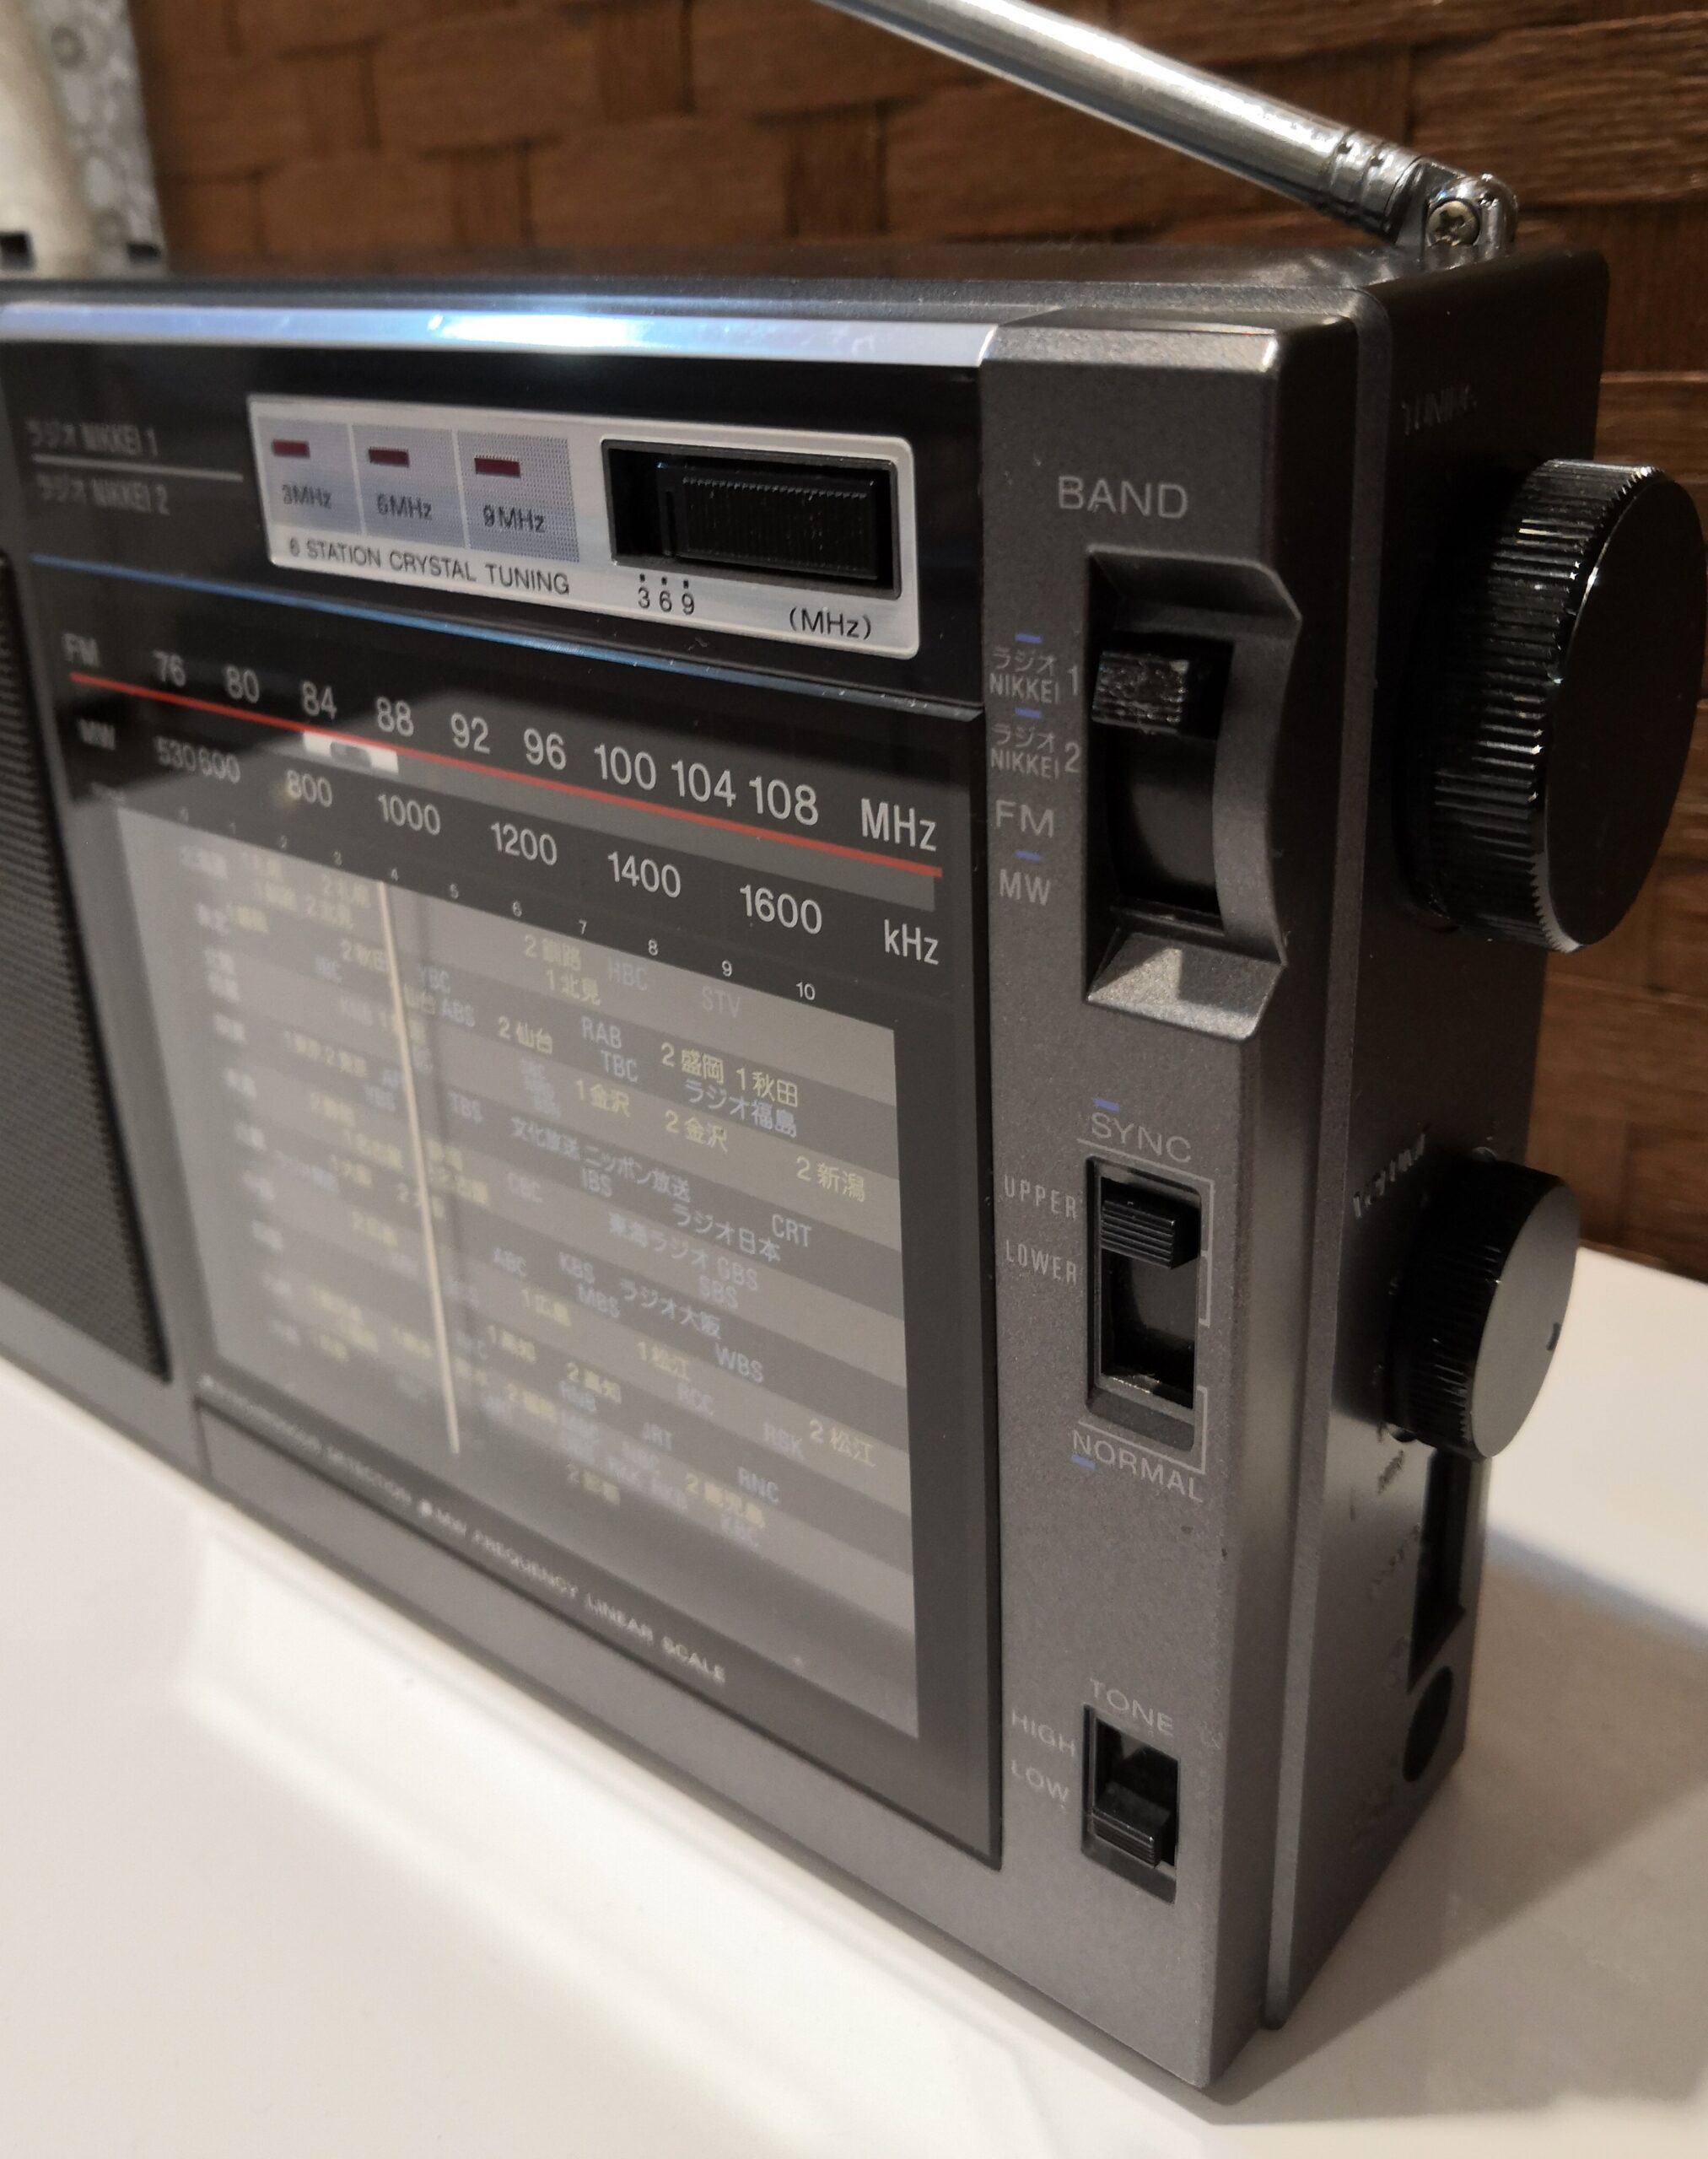 SONY ソニー NIKKEIラジオ オーディオ ICF-EX5MK2 FM AM ラジオ 入荷しました。 | 愛知と岐阜のリサイクルショップ 再良市場